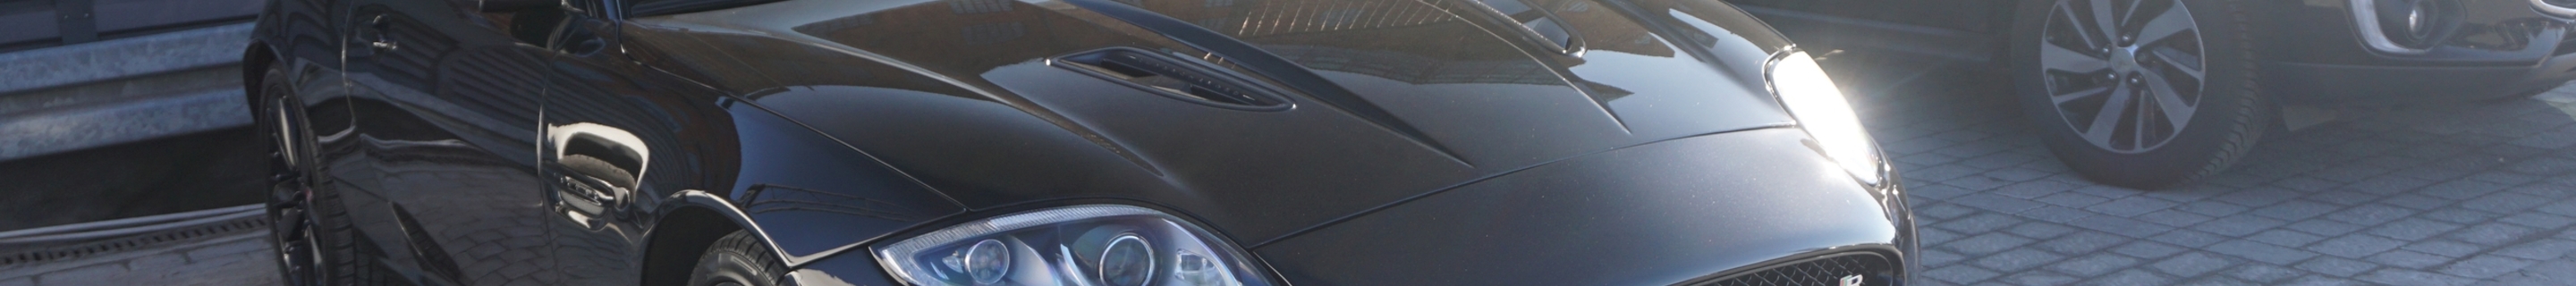 Jaguar XKR 2012